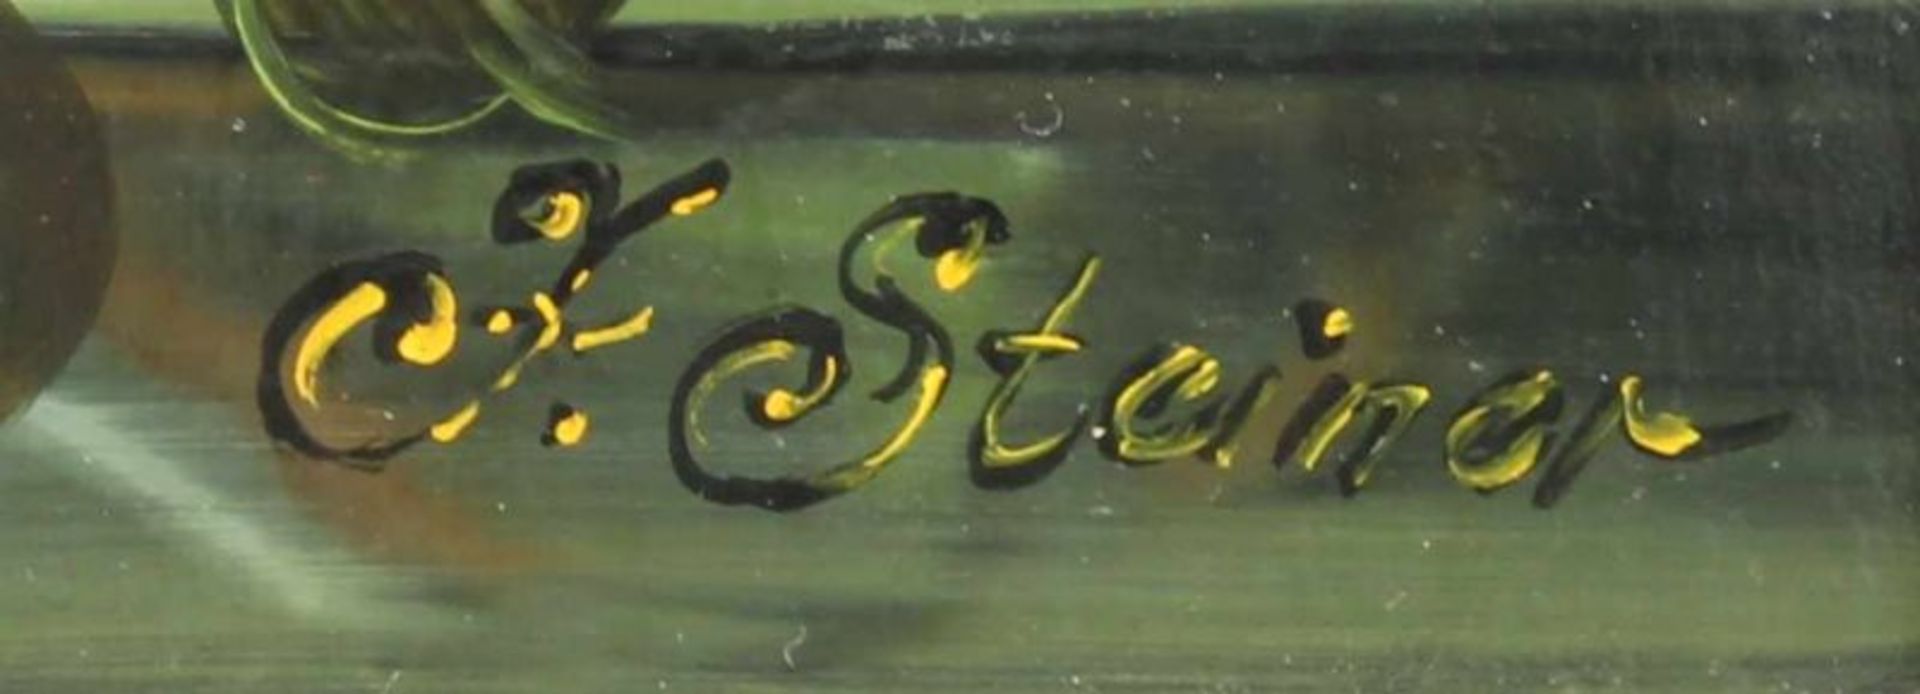 Steiner, J. (20. Jh.), "Blumenstillleben", Öl auf Holz, signiert unten rechts J. Steiner, 39 x 29 cm - Image 3 of 4